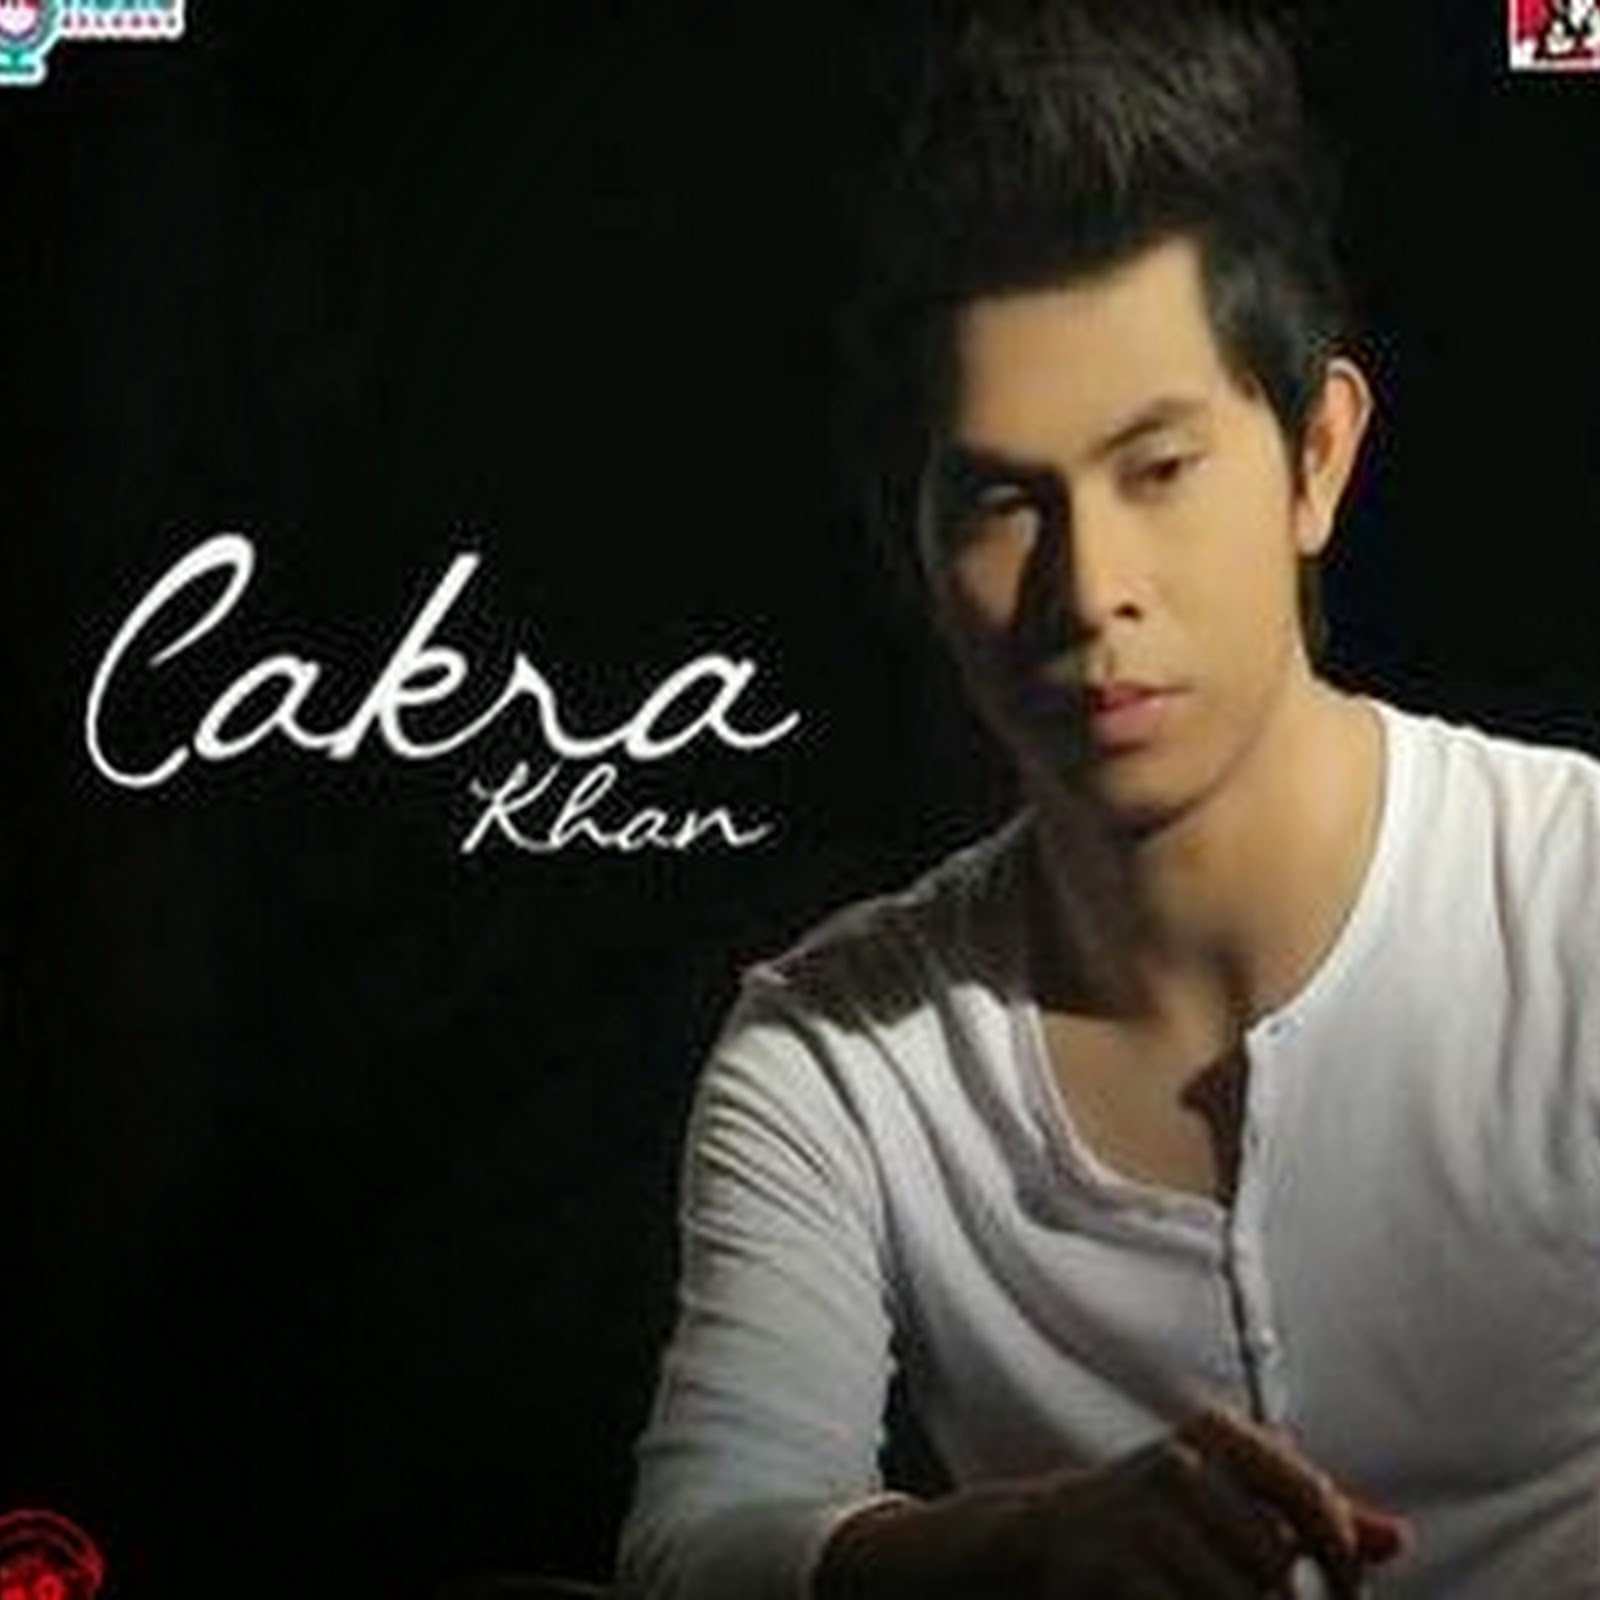 Download Music Cakra Khan Kau Memilih Dia | Free Downloads Music